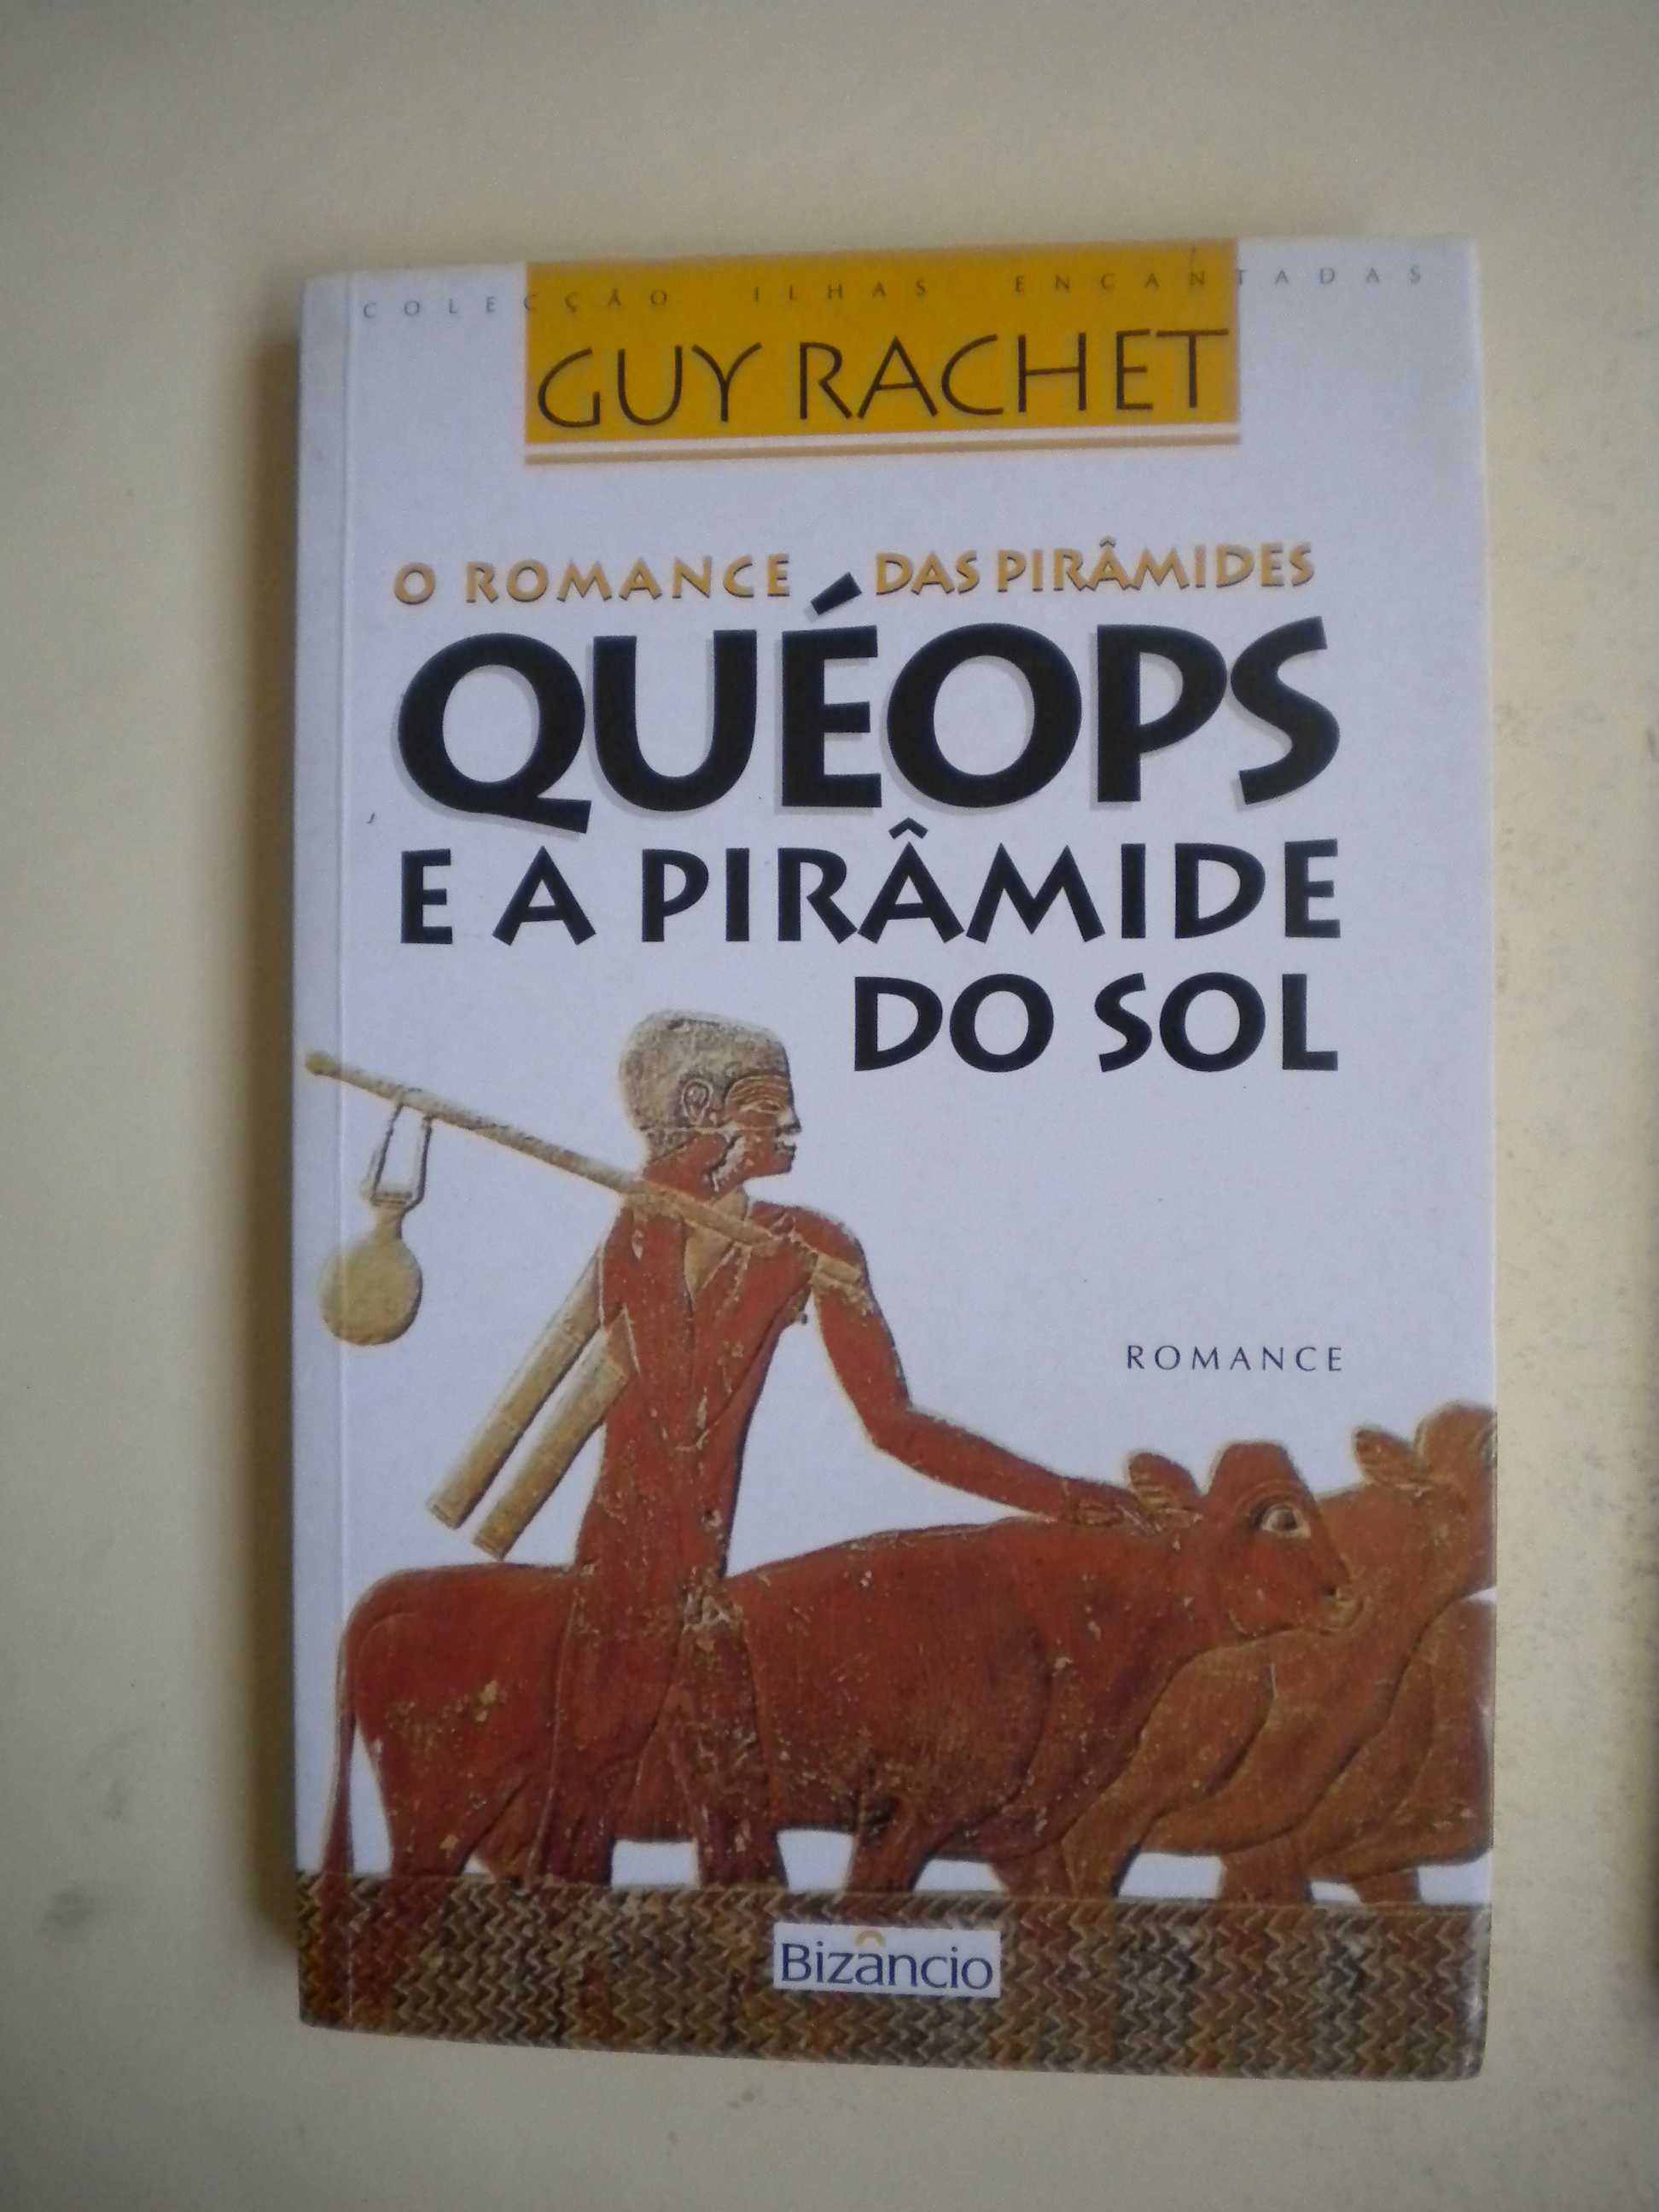 O Romance das Pirâmides
de Guy Rachet
Trilogia